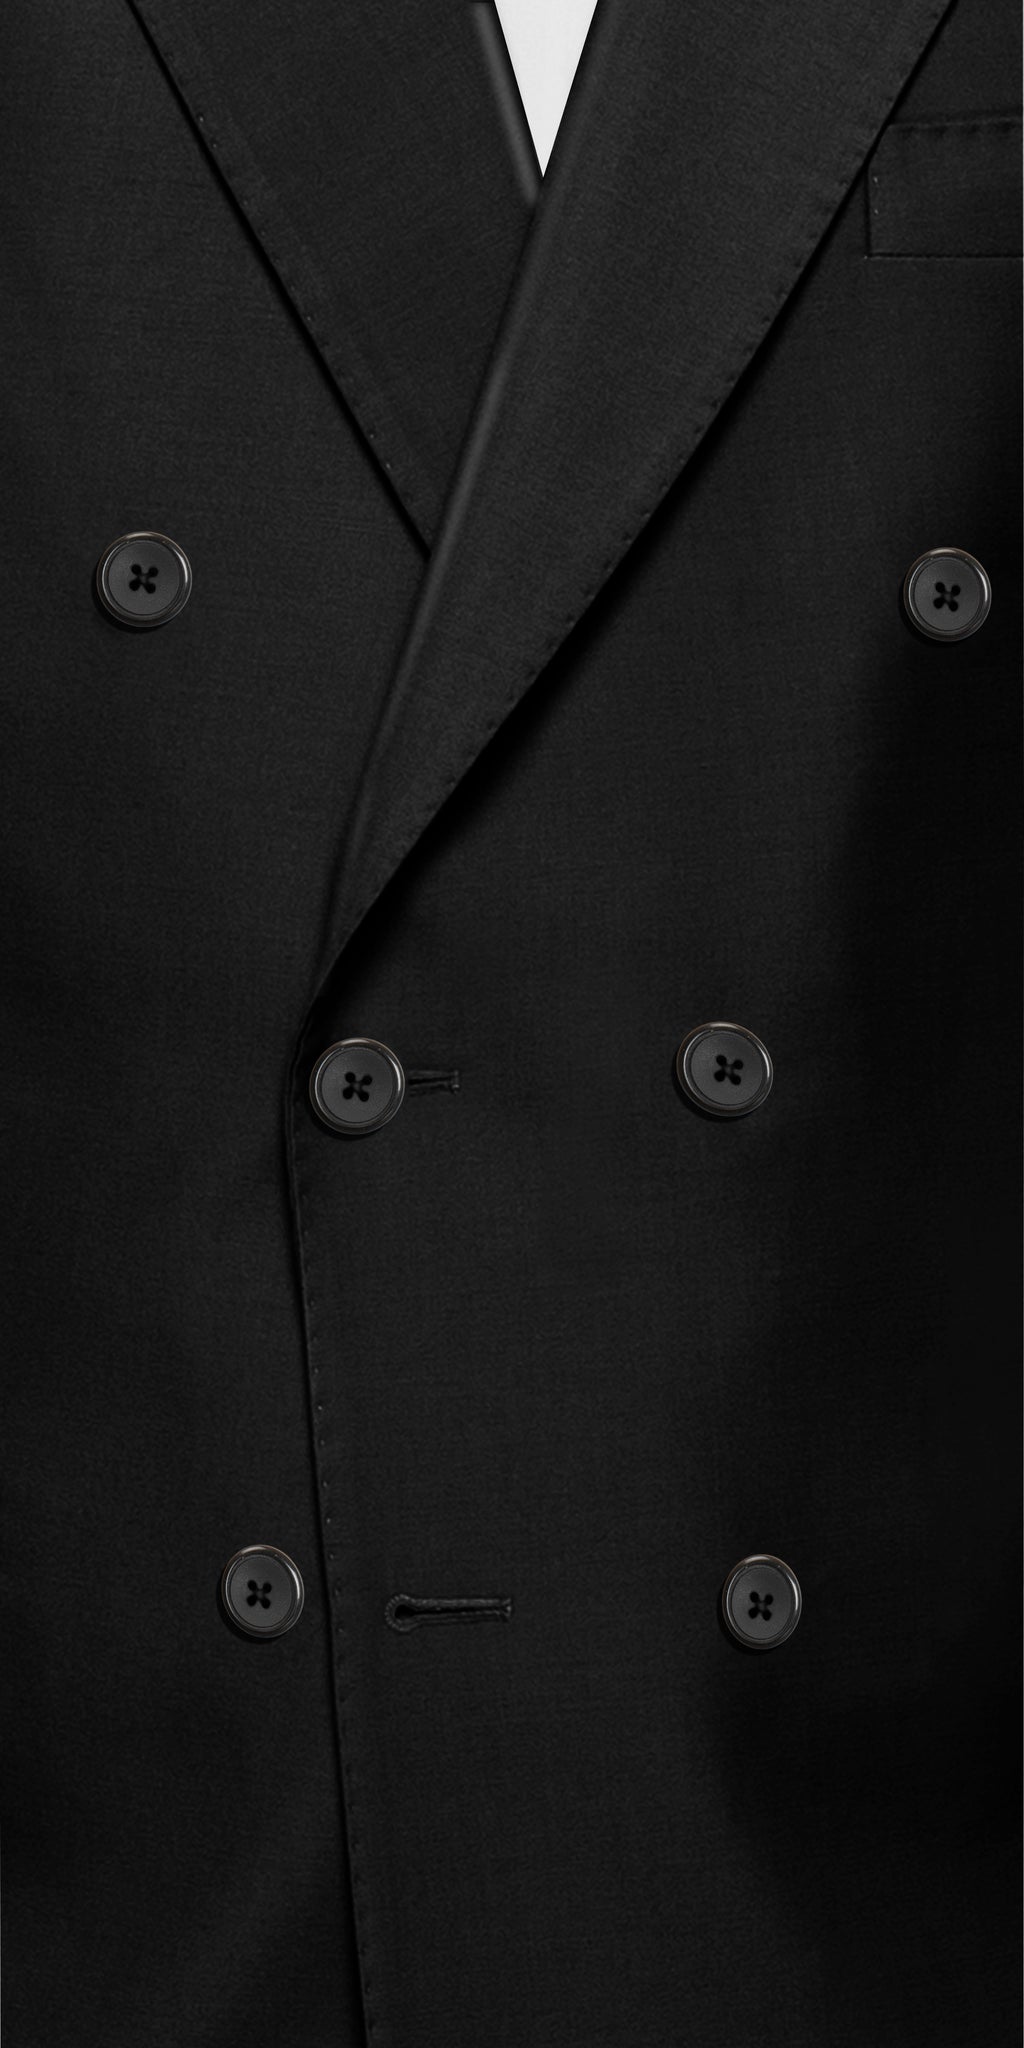 Reggio Calabria Black Suit